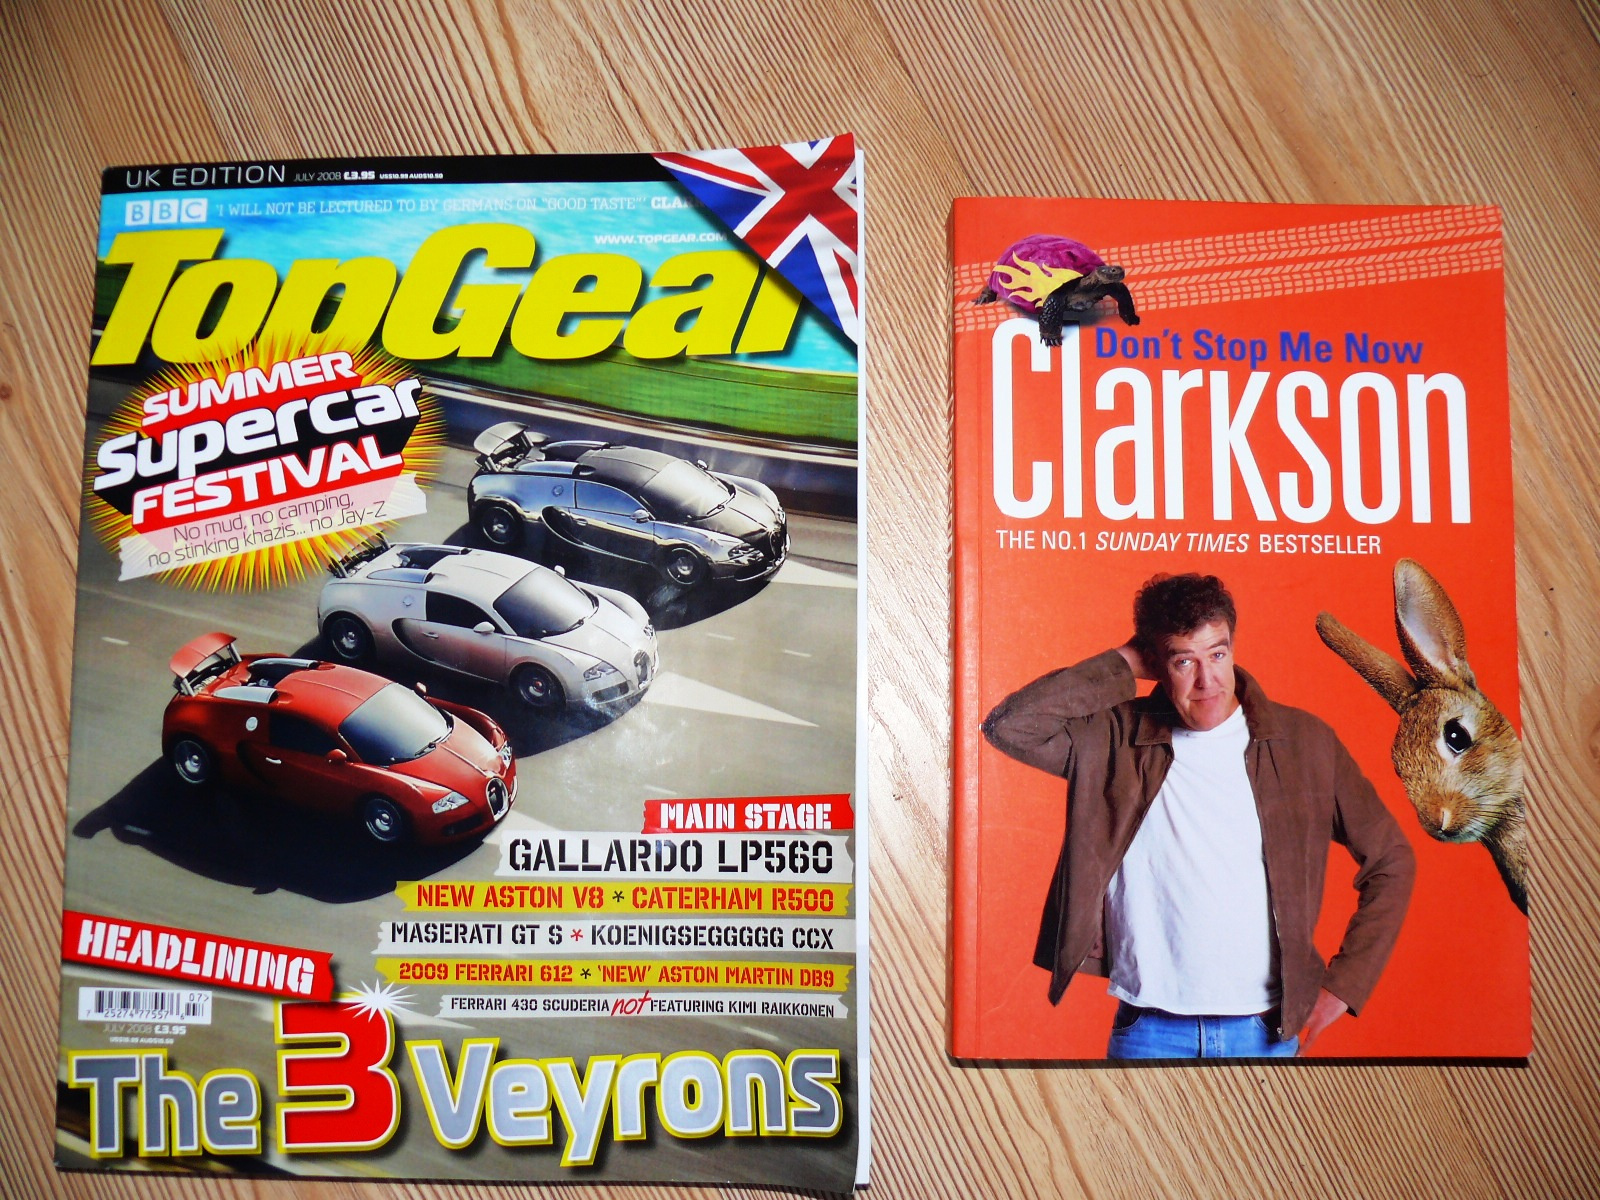 Jeremy Clarkson - Top gear